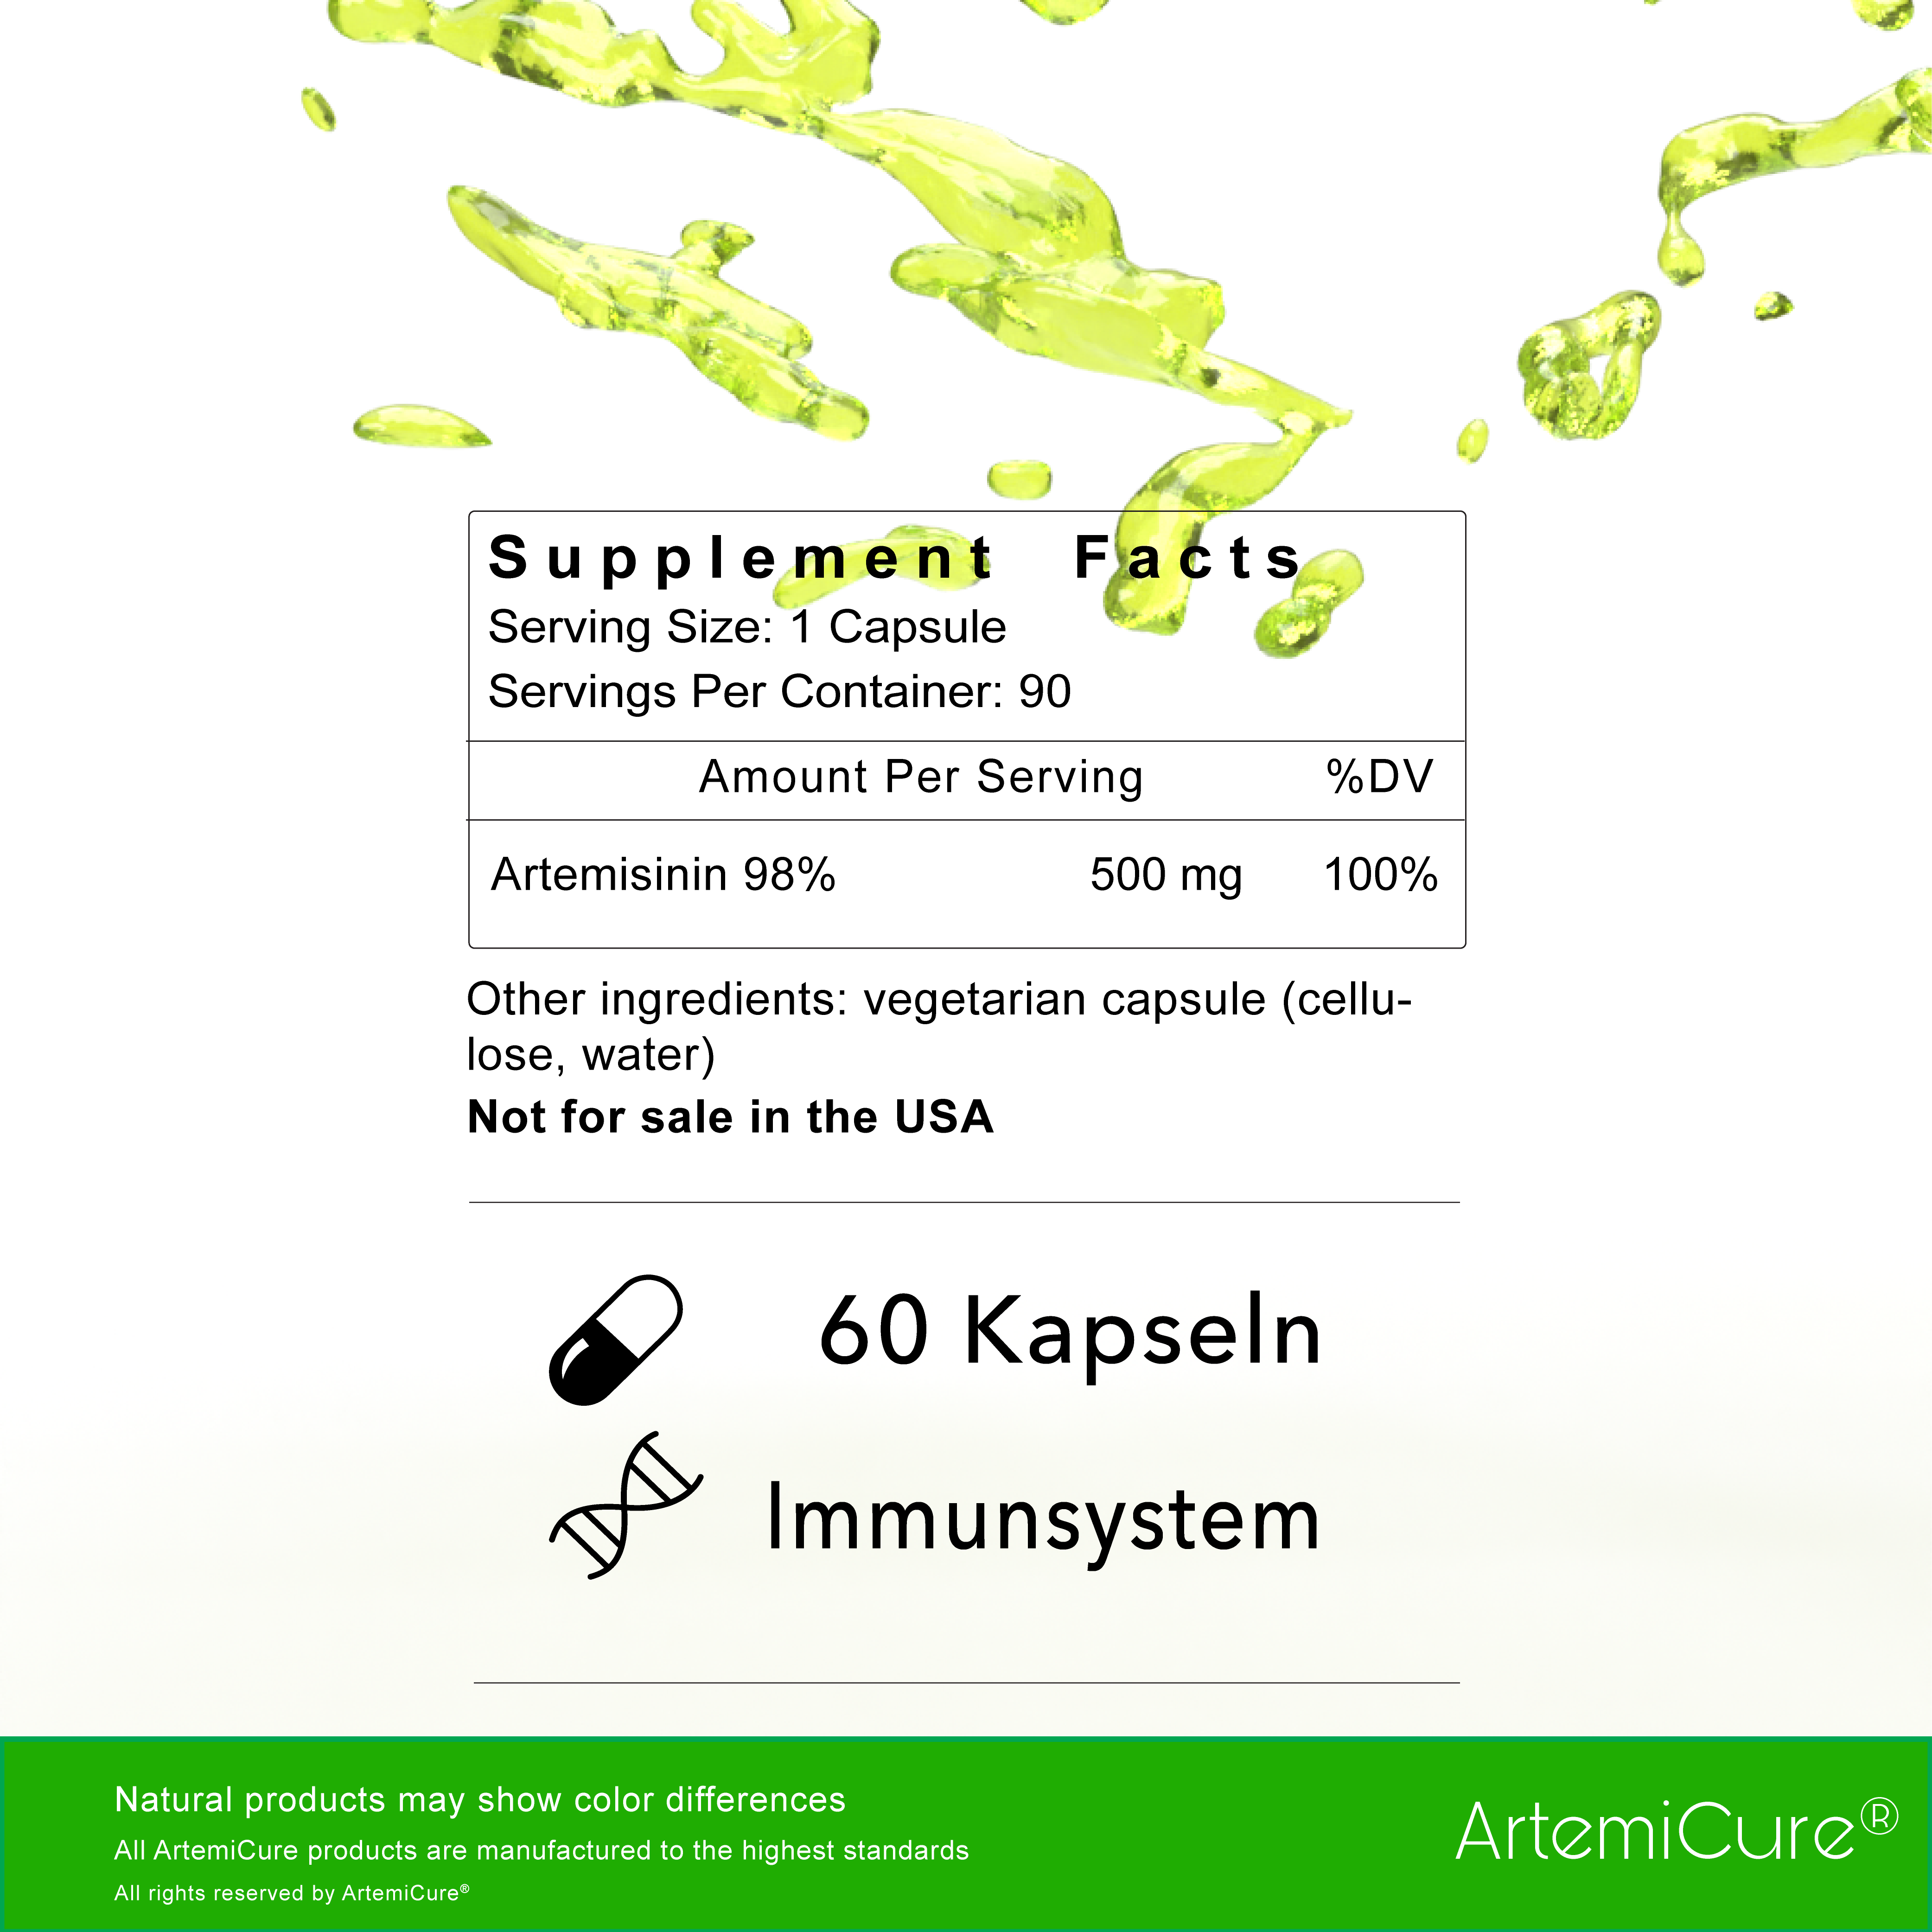 Artemisinin 98% - 500mg - 60 Capsules